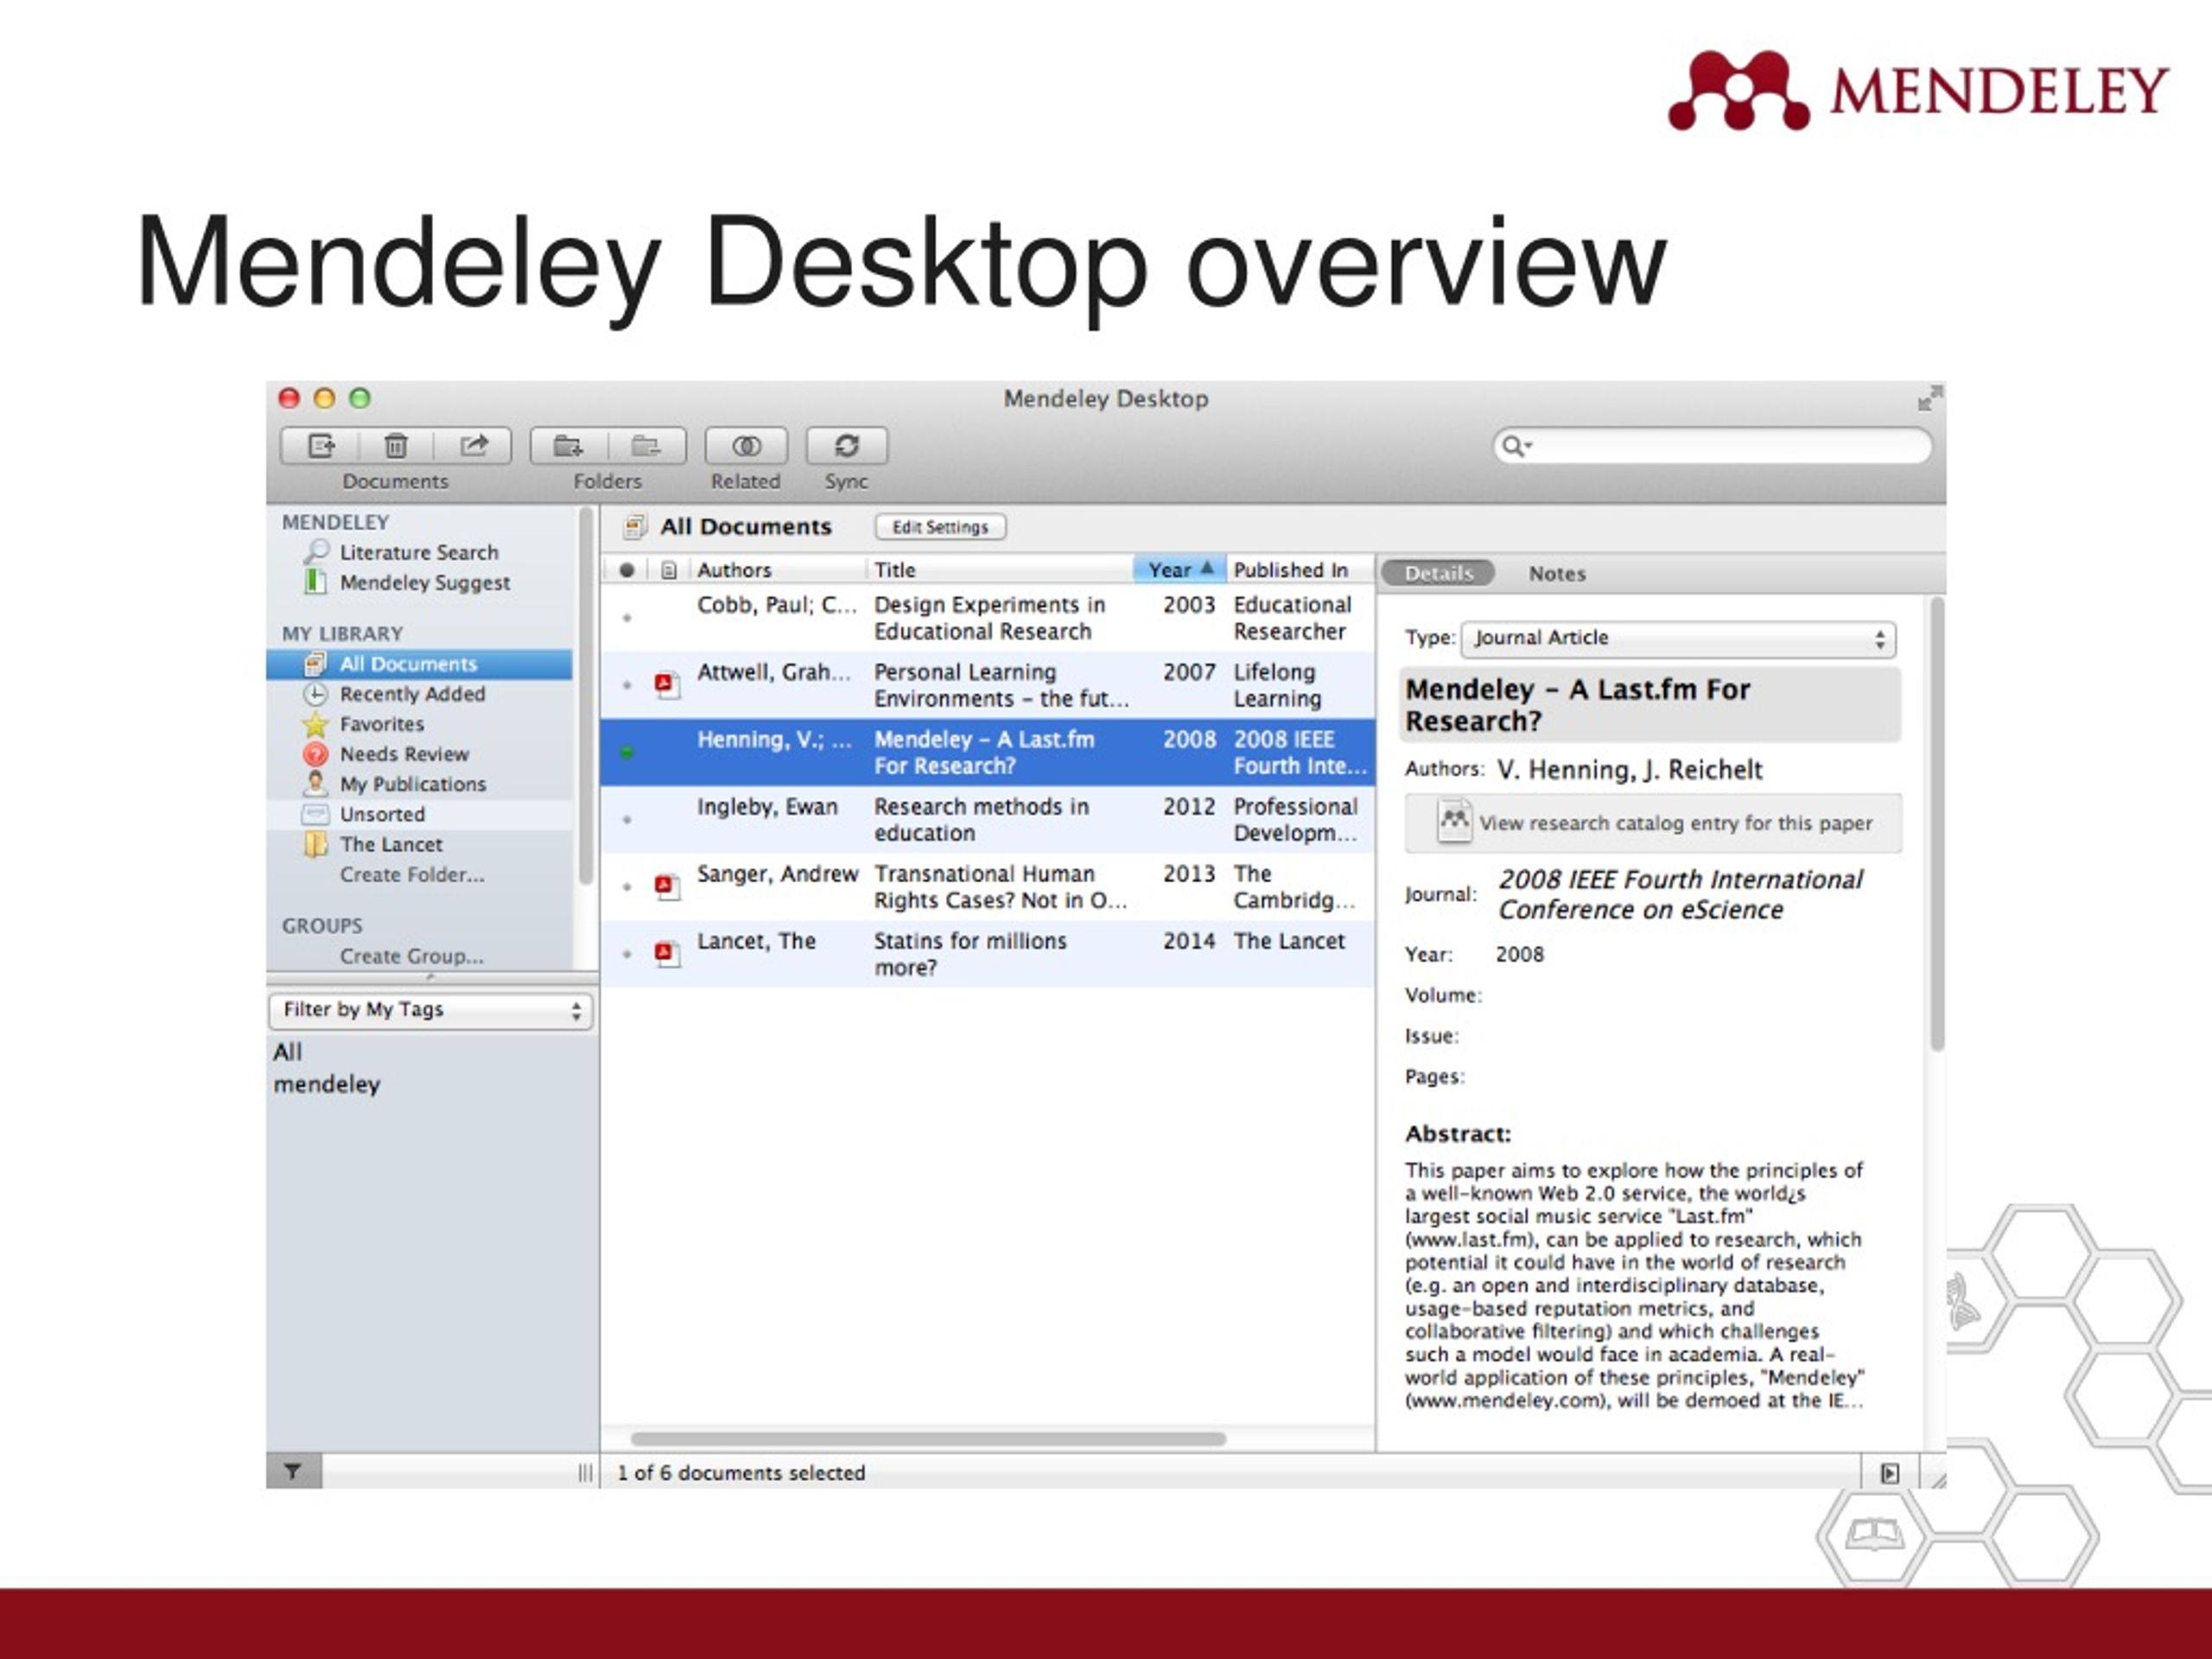 download mendeley desktop for mac 10.6.8